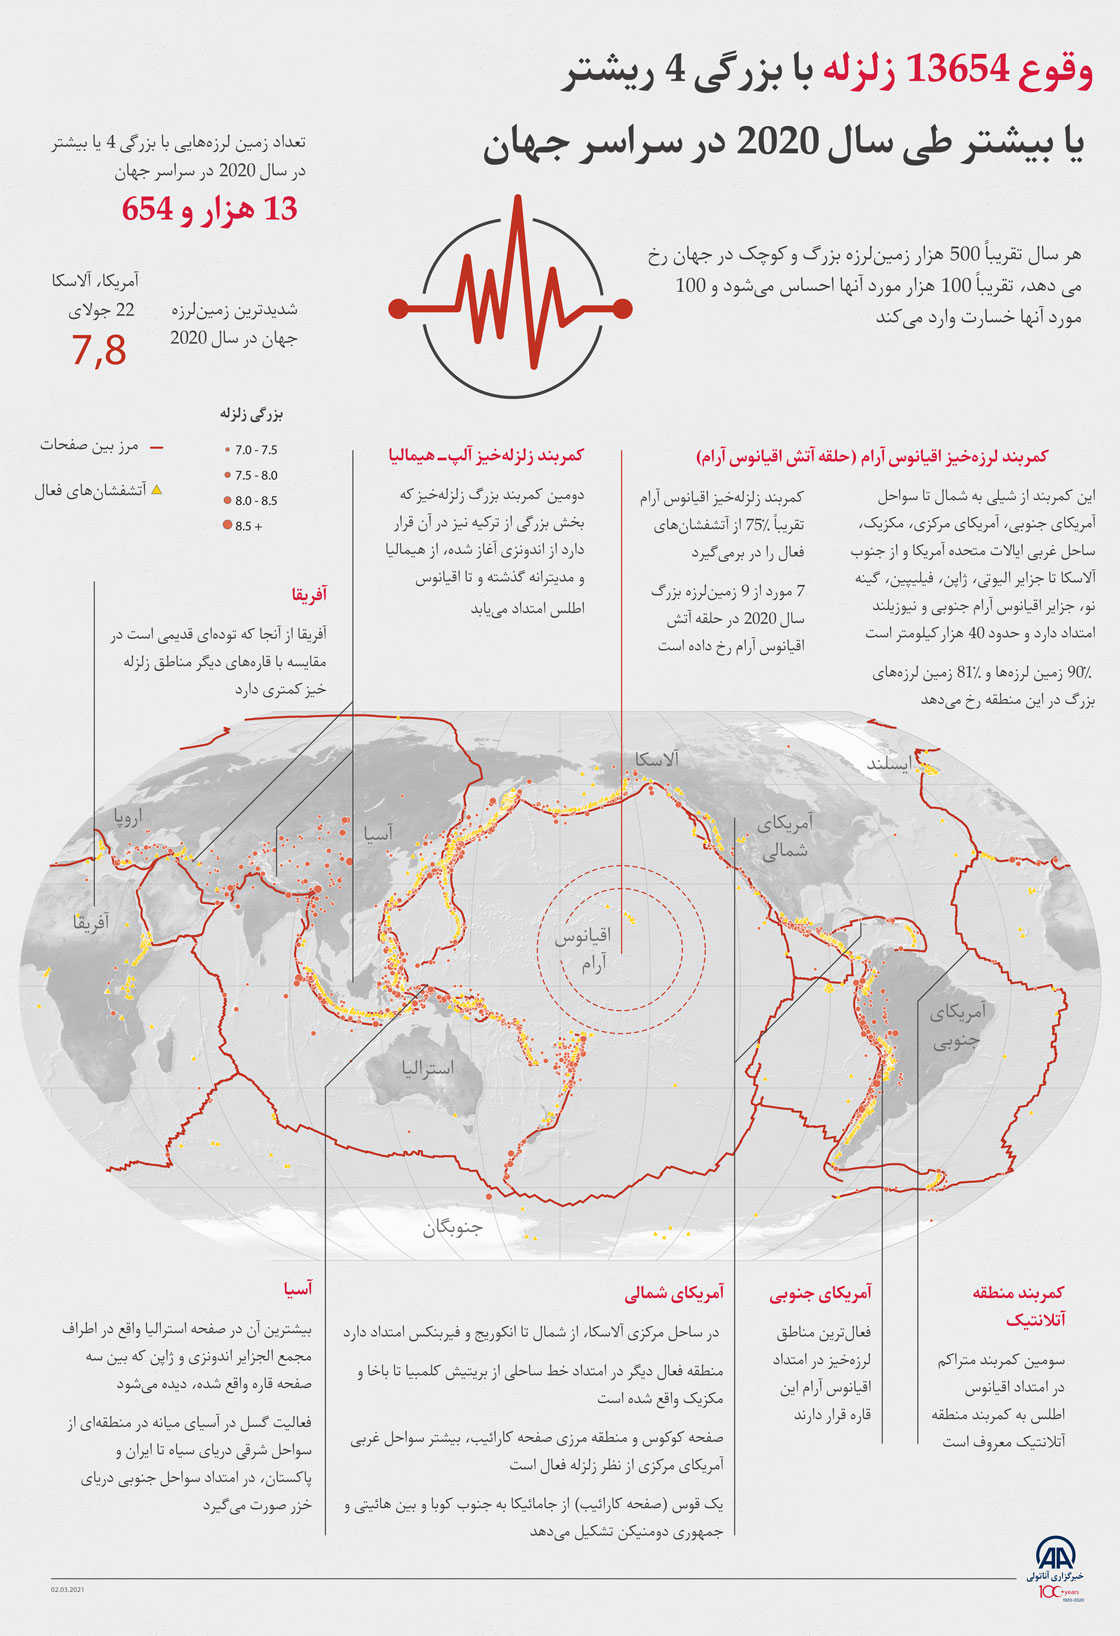 وقوع 13654 زلزله با بزرگی 4 ریشتر یا بیشتر طی سال 2020 در سراسر جهان